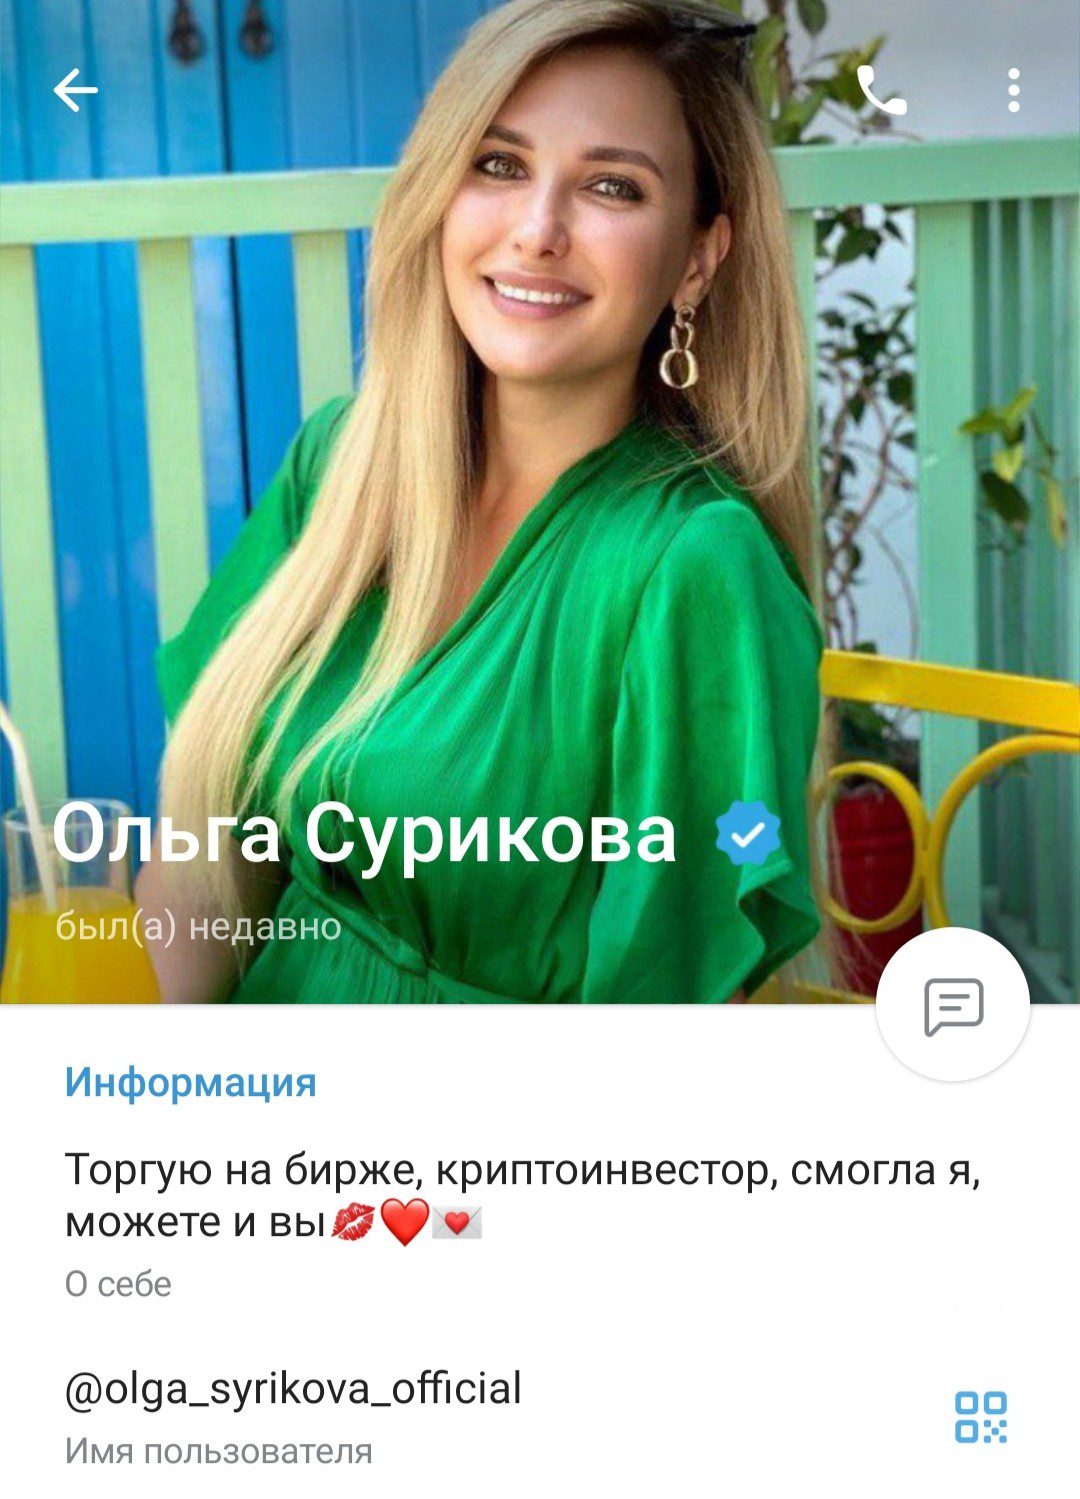 olga syrikova official отзывы